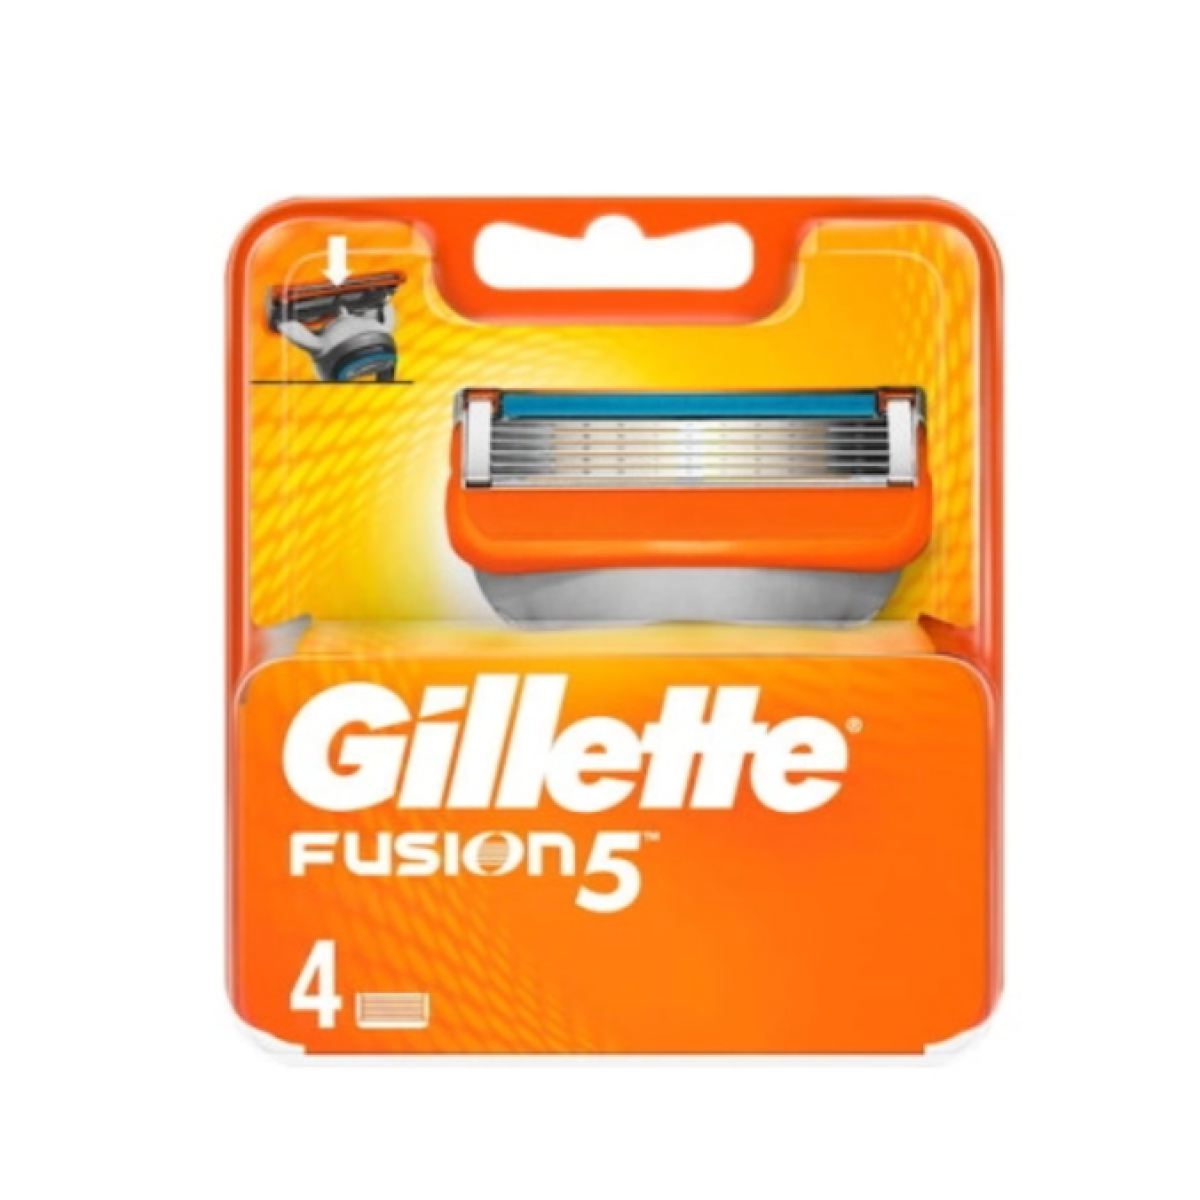 Gillette | Fusion 5 Ανταλλακτικές Κεφαλές Ξυριστικής Μηχανής | 4τμχ